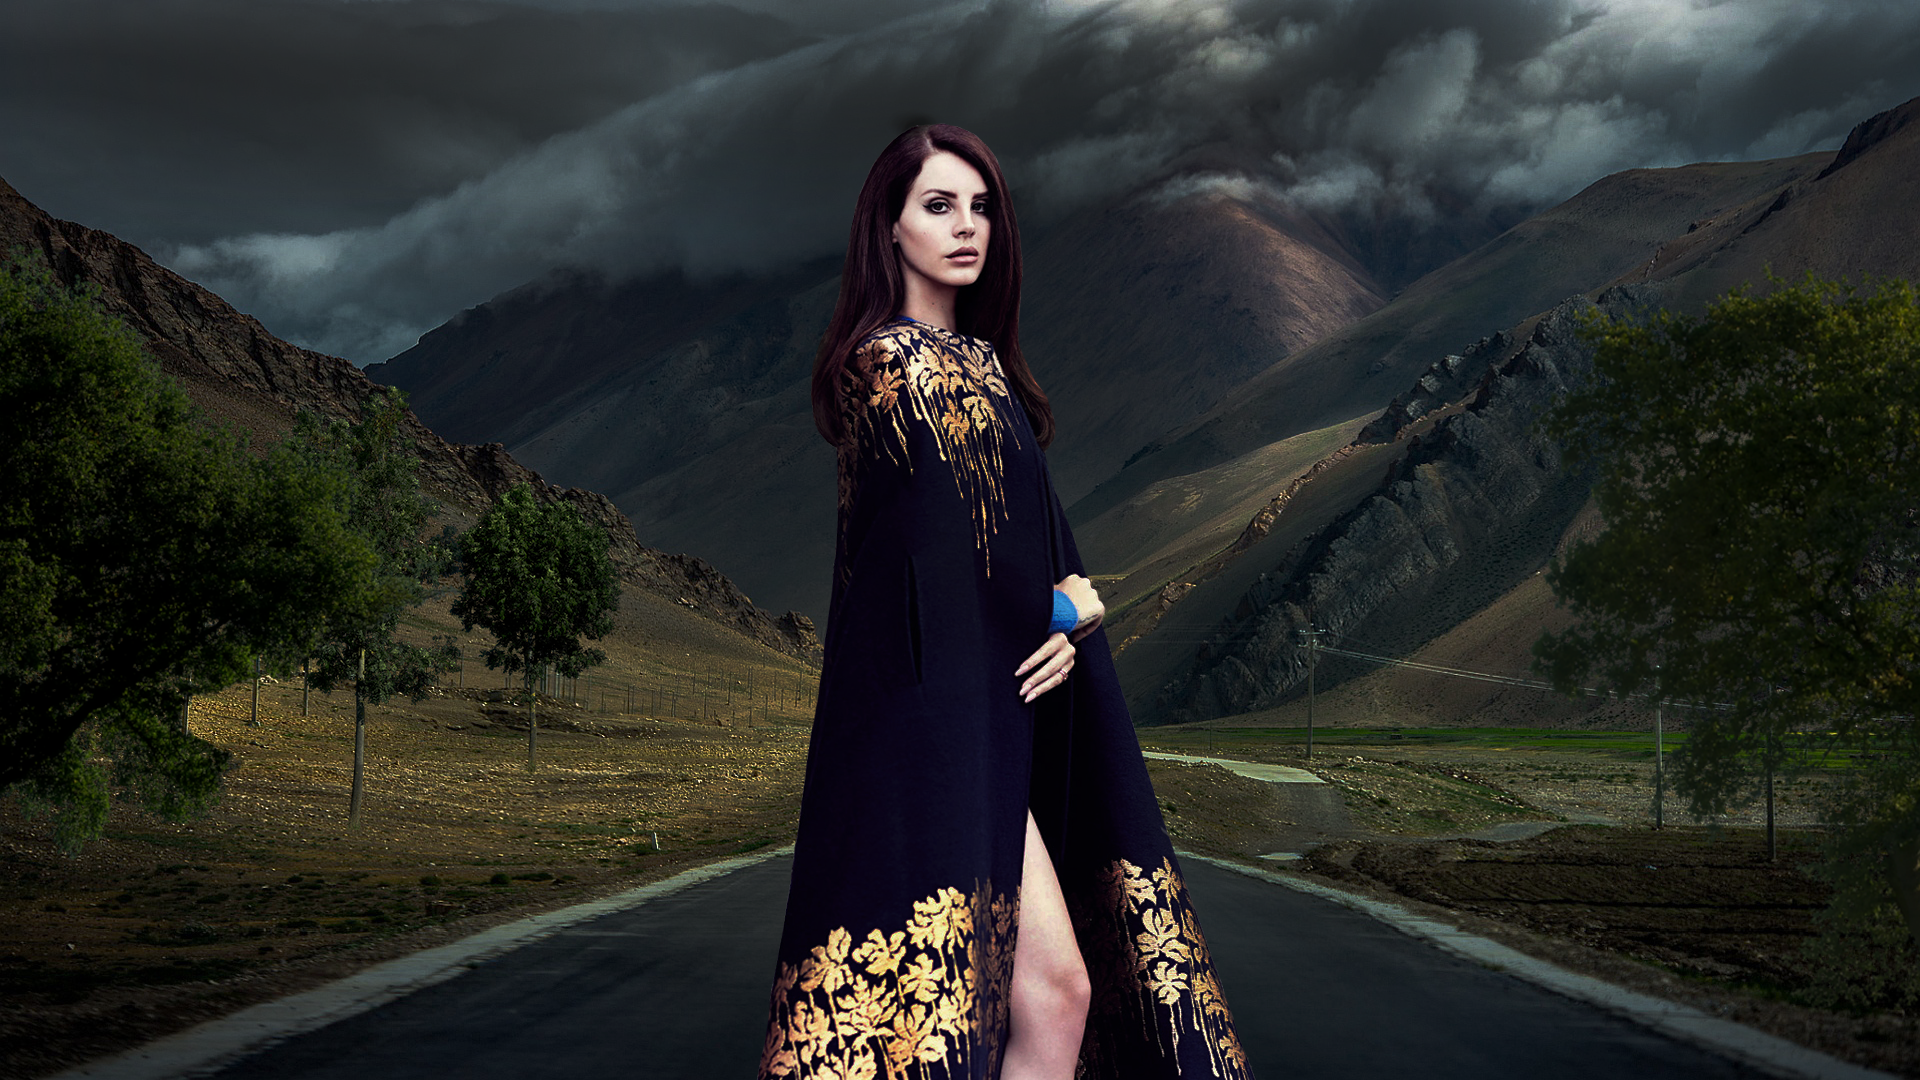 Lana Del Rey Mountain Wallpaper - Lana Del Rey Tour La To The Moon - HD Wallpaper 